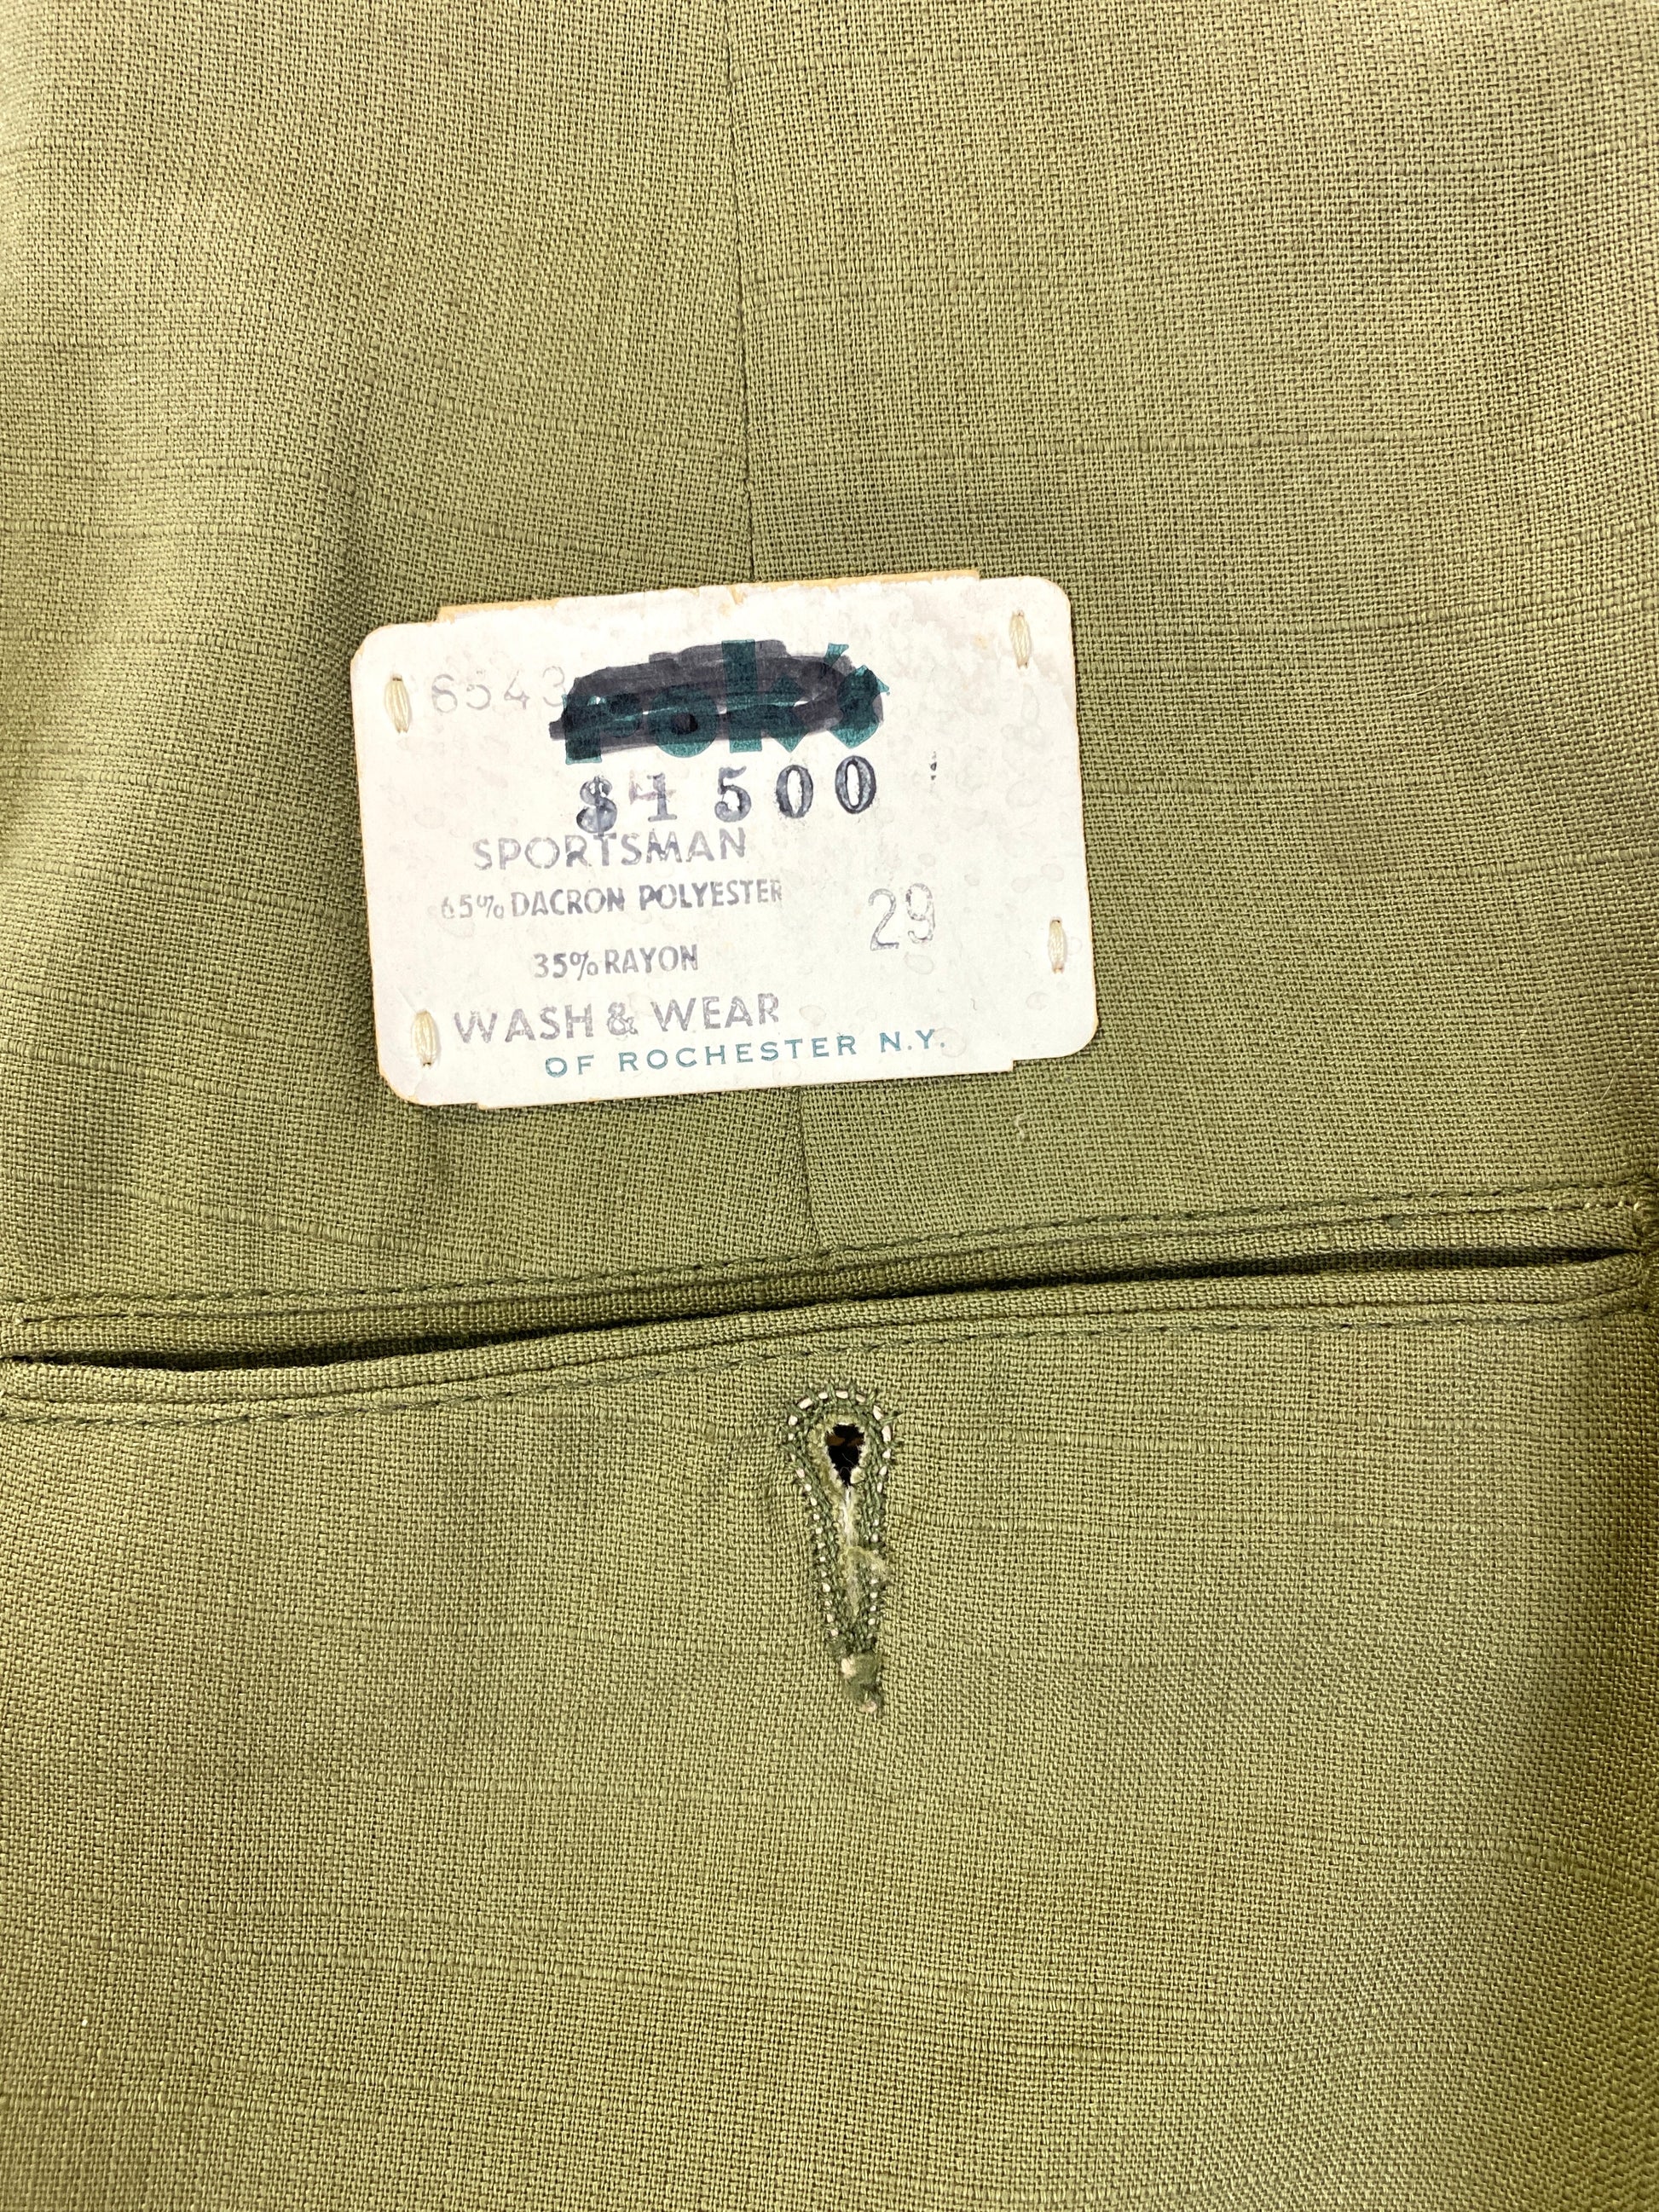 Vintage 1960s Deadstock Green Straight-Leg Slacks, Men's Polyester Trousers, NOS 